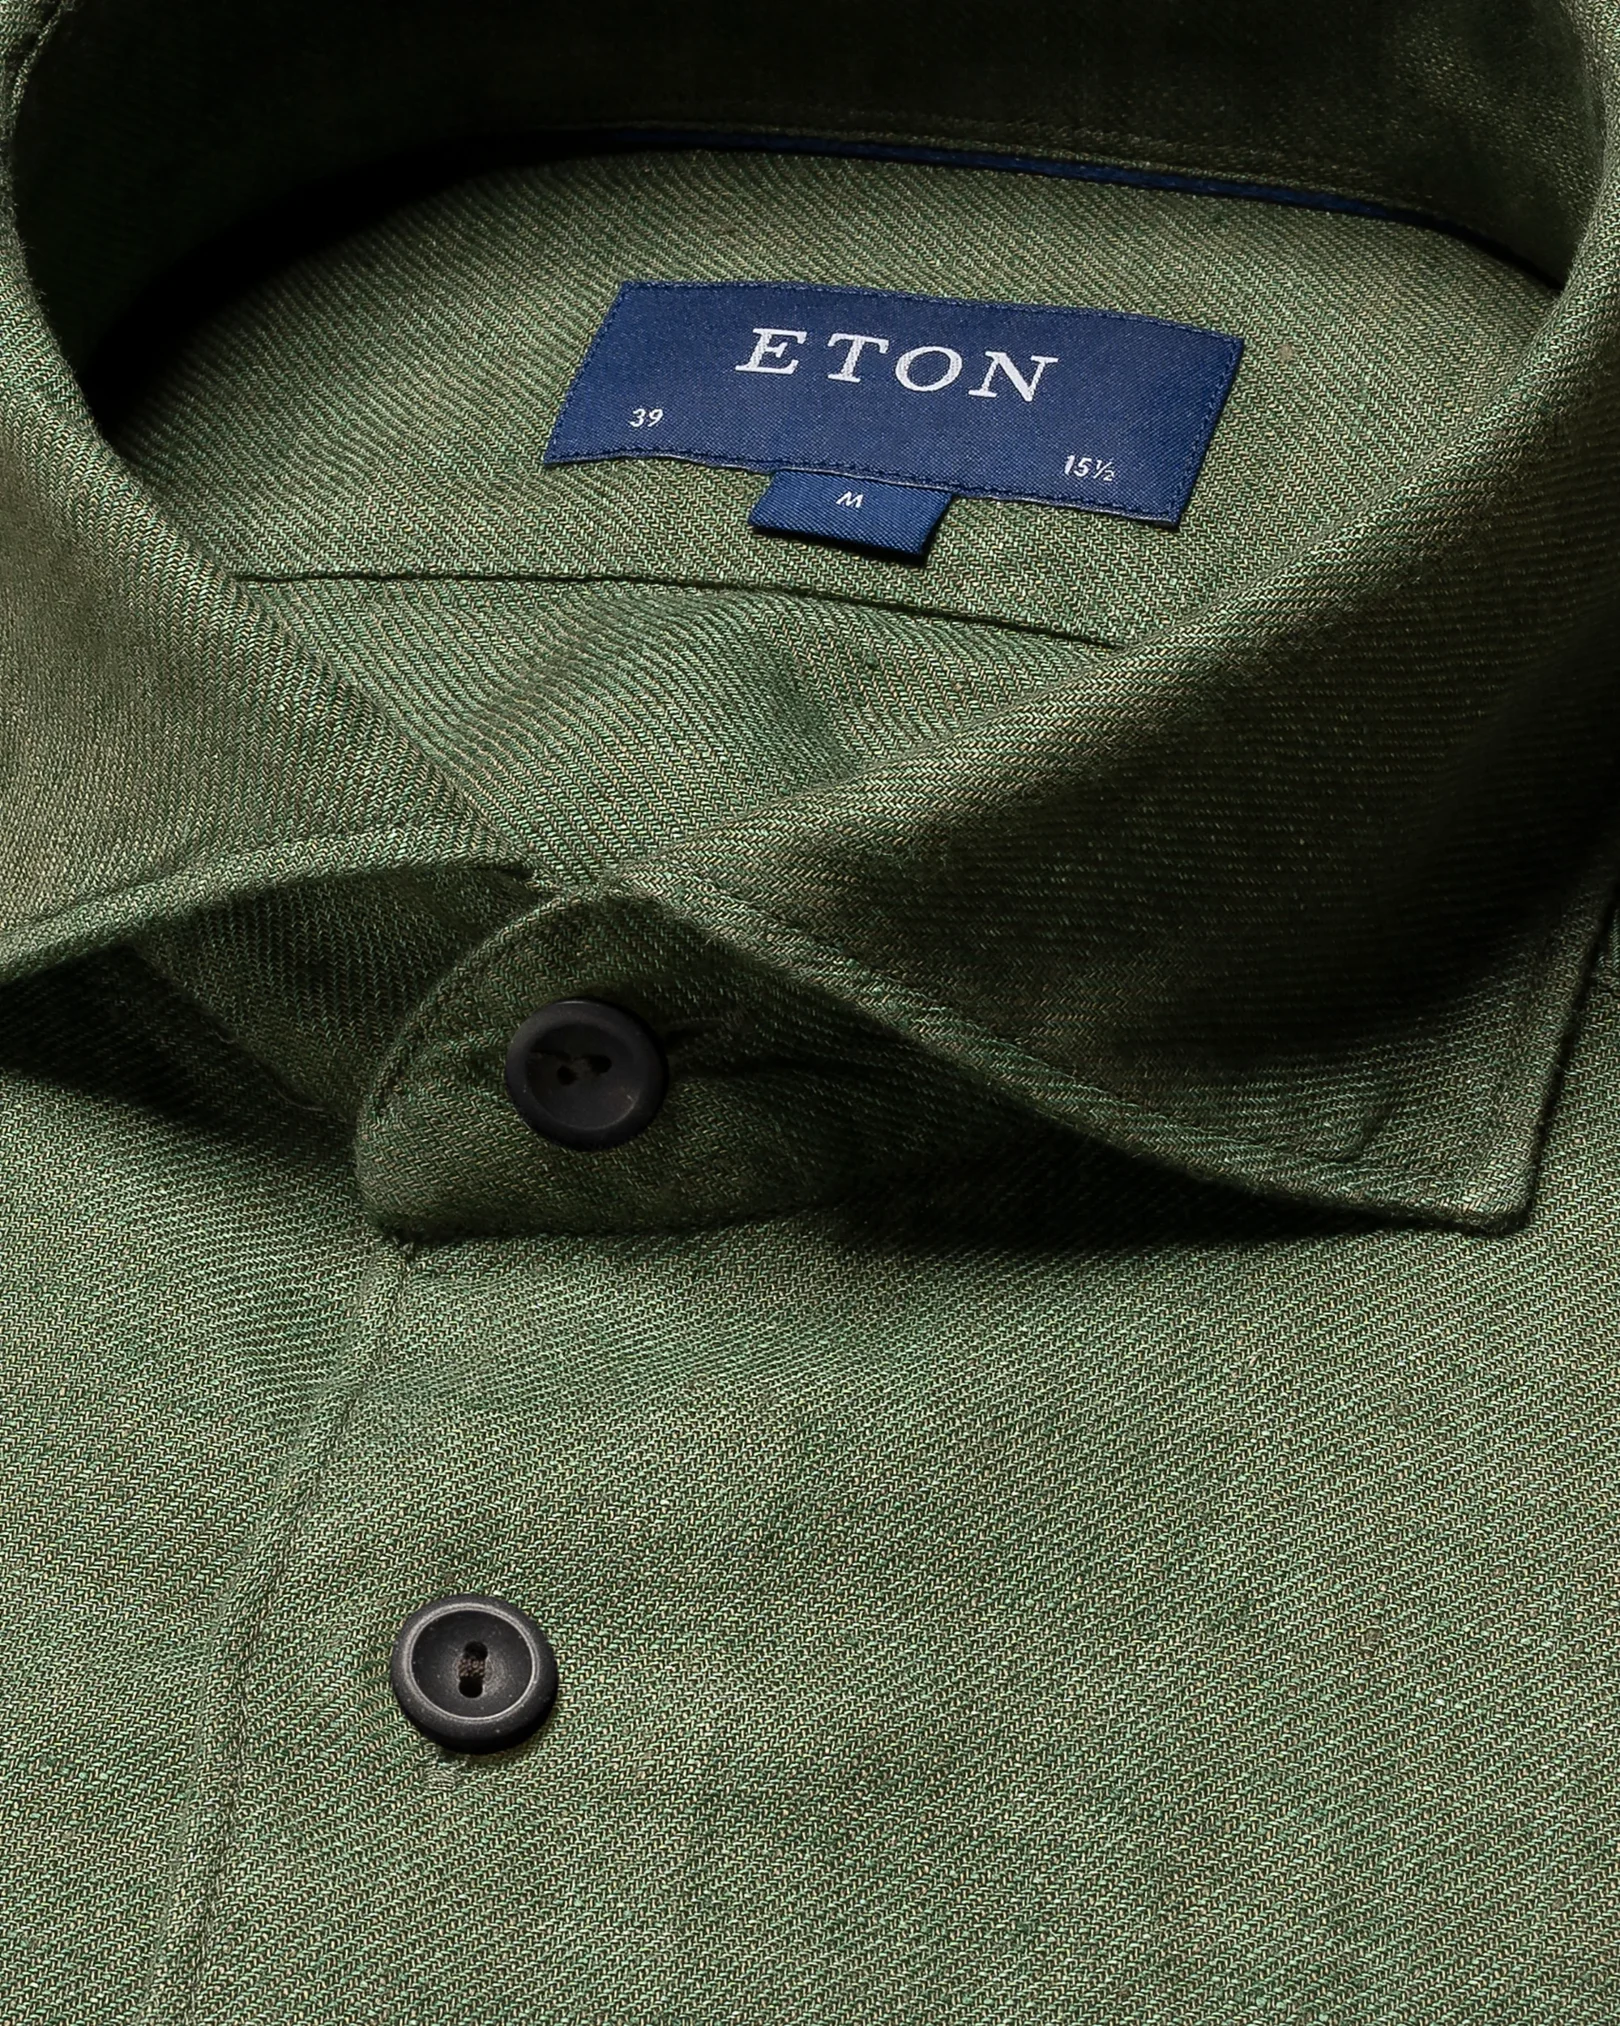 Eton - widespread green linen shirt